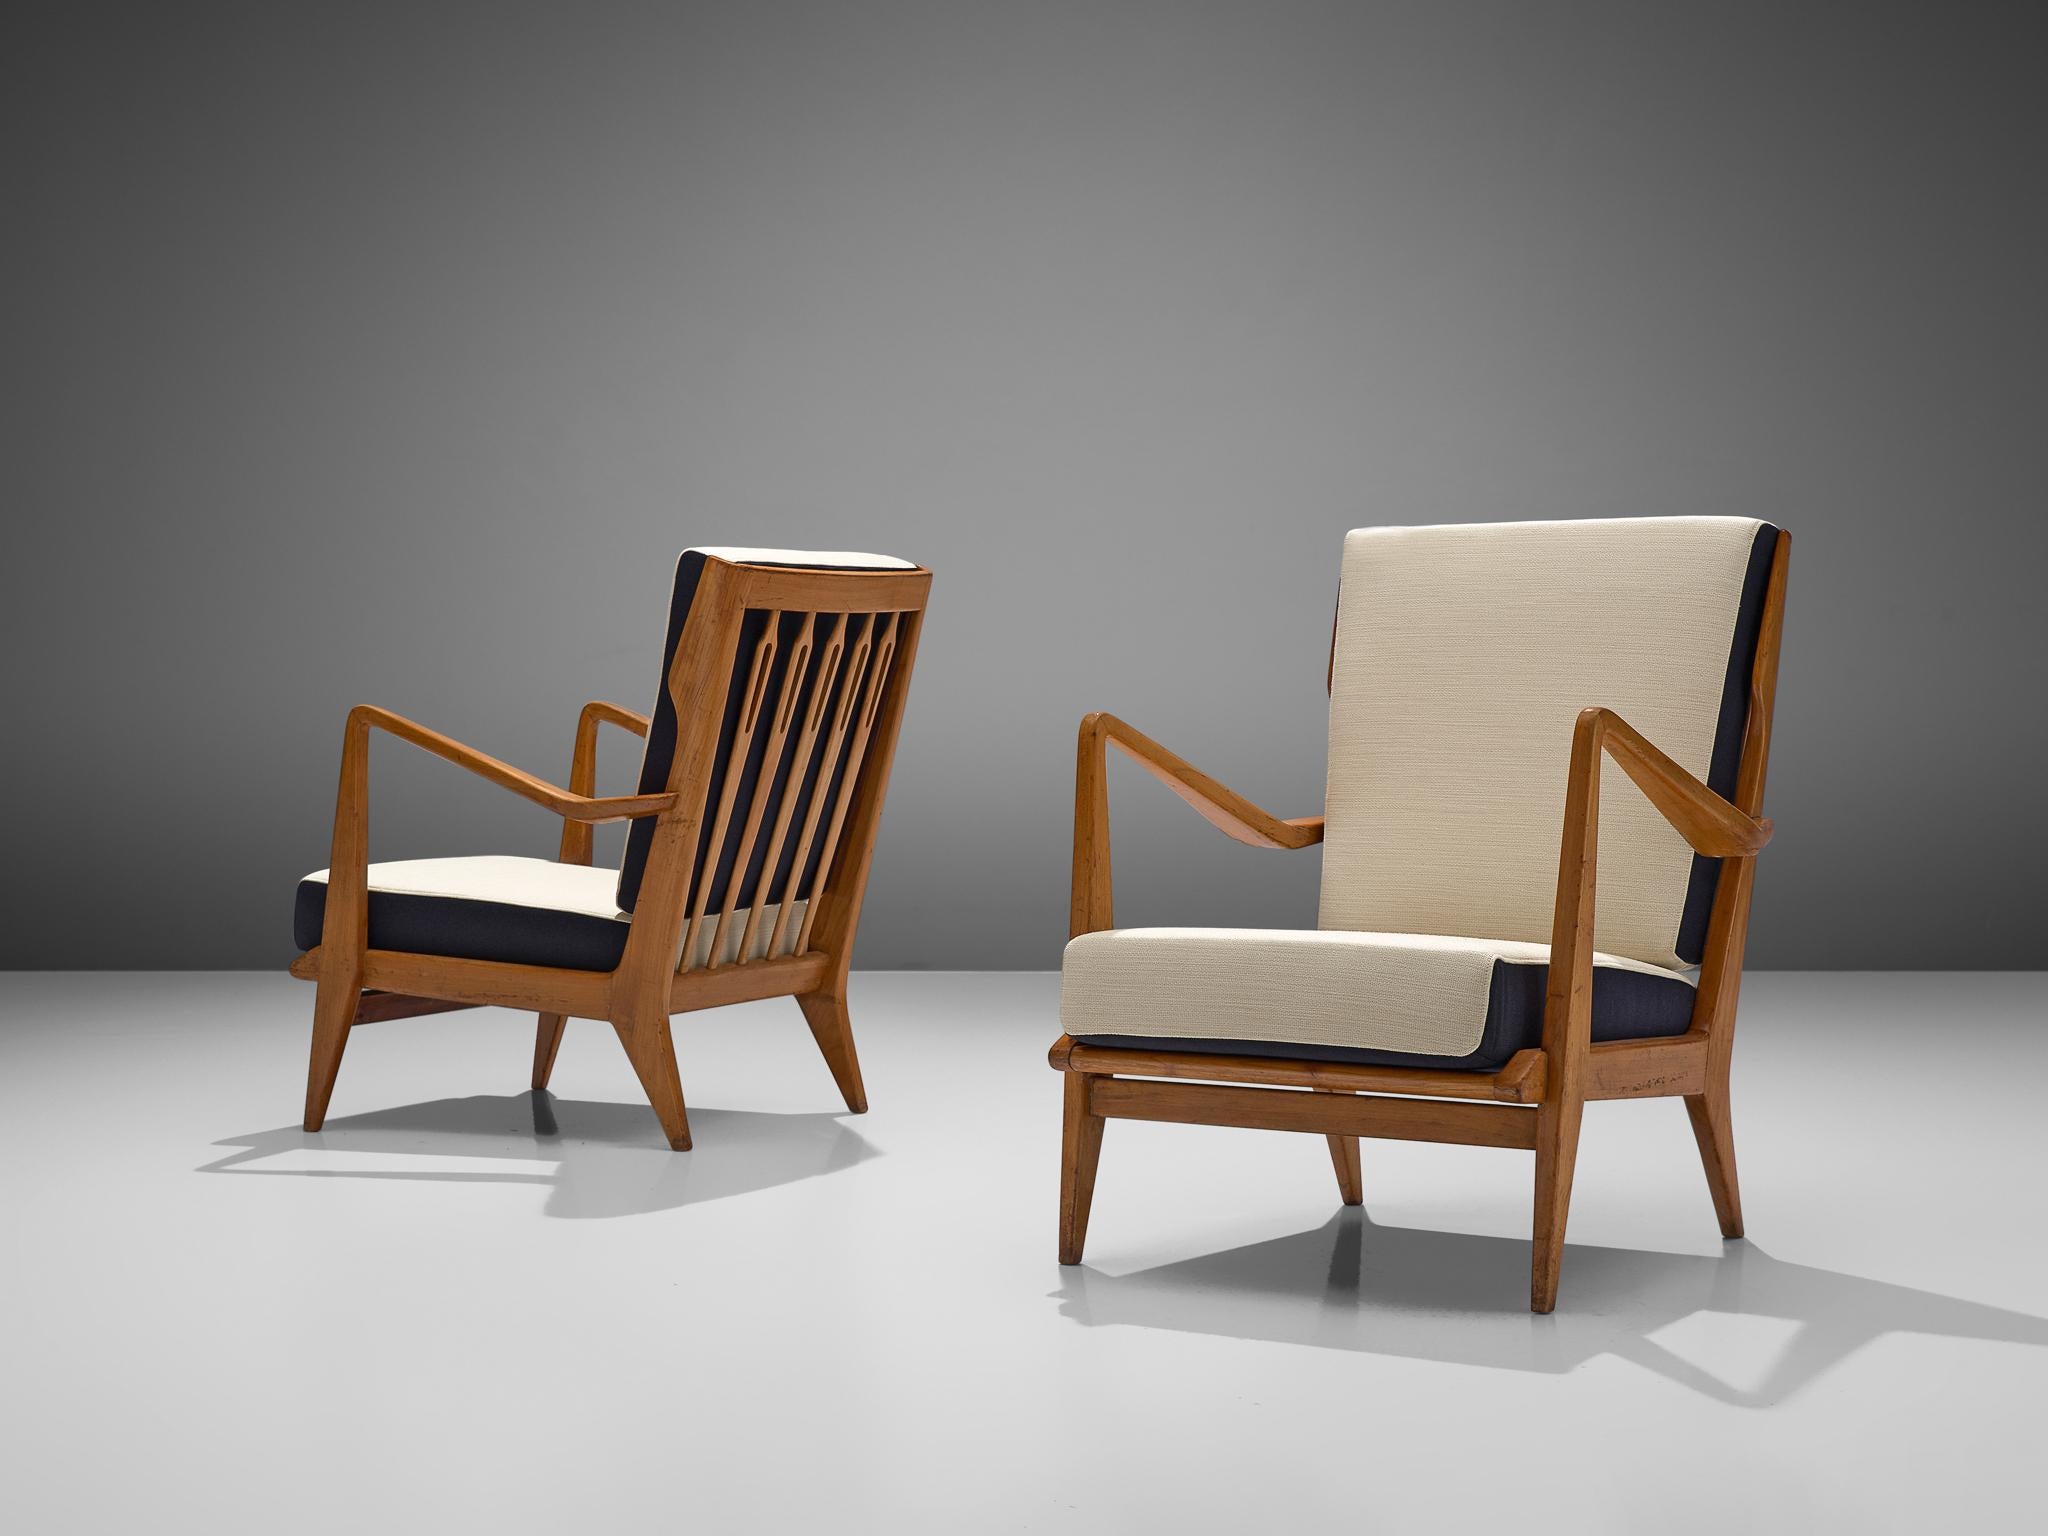 Gio Ponti pour Cassina, paire de fauteuils, modèle 516, cerisier, tissu Kvadrat Balder, Cassina, Italie, 1955.

Cette paire de fauteuils est conçue par Gio Ponti et fabriquée par Cassina. Le design se caractérise par quelques éléments distincts qui